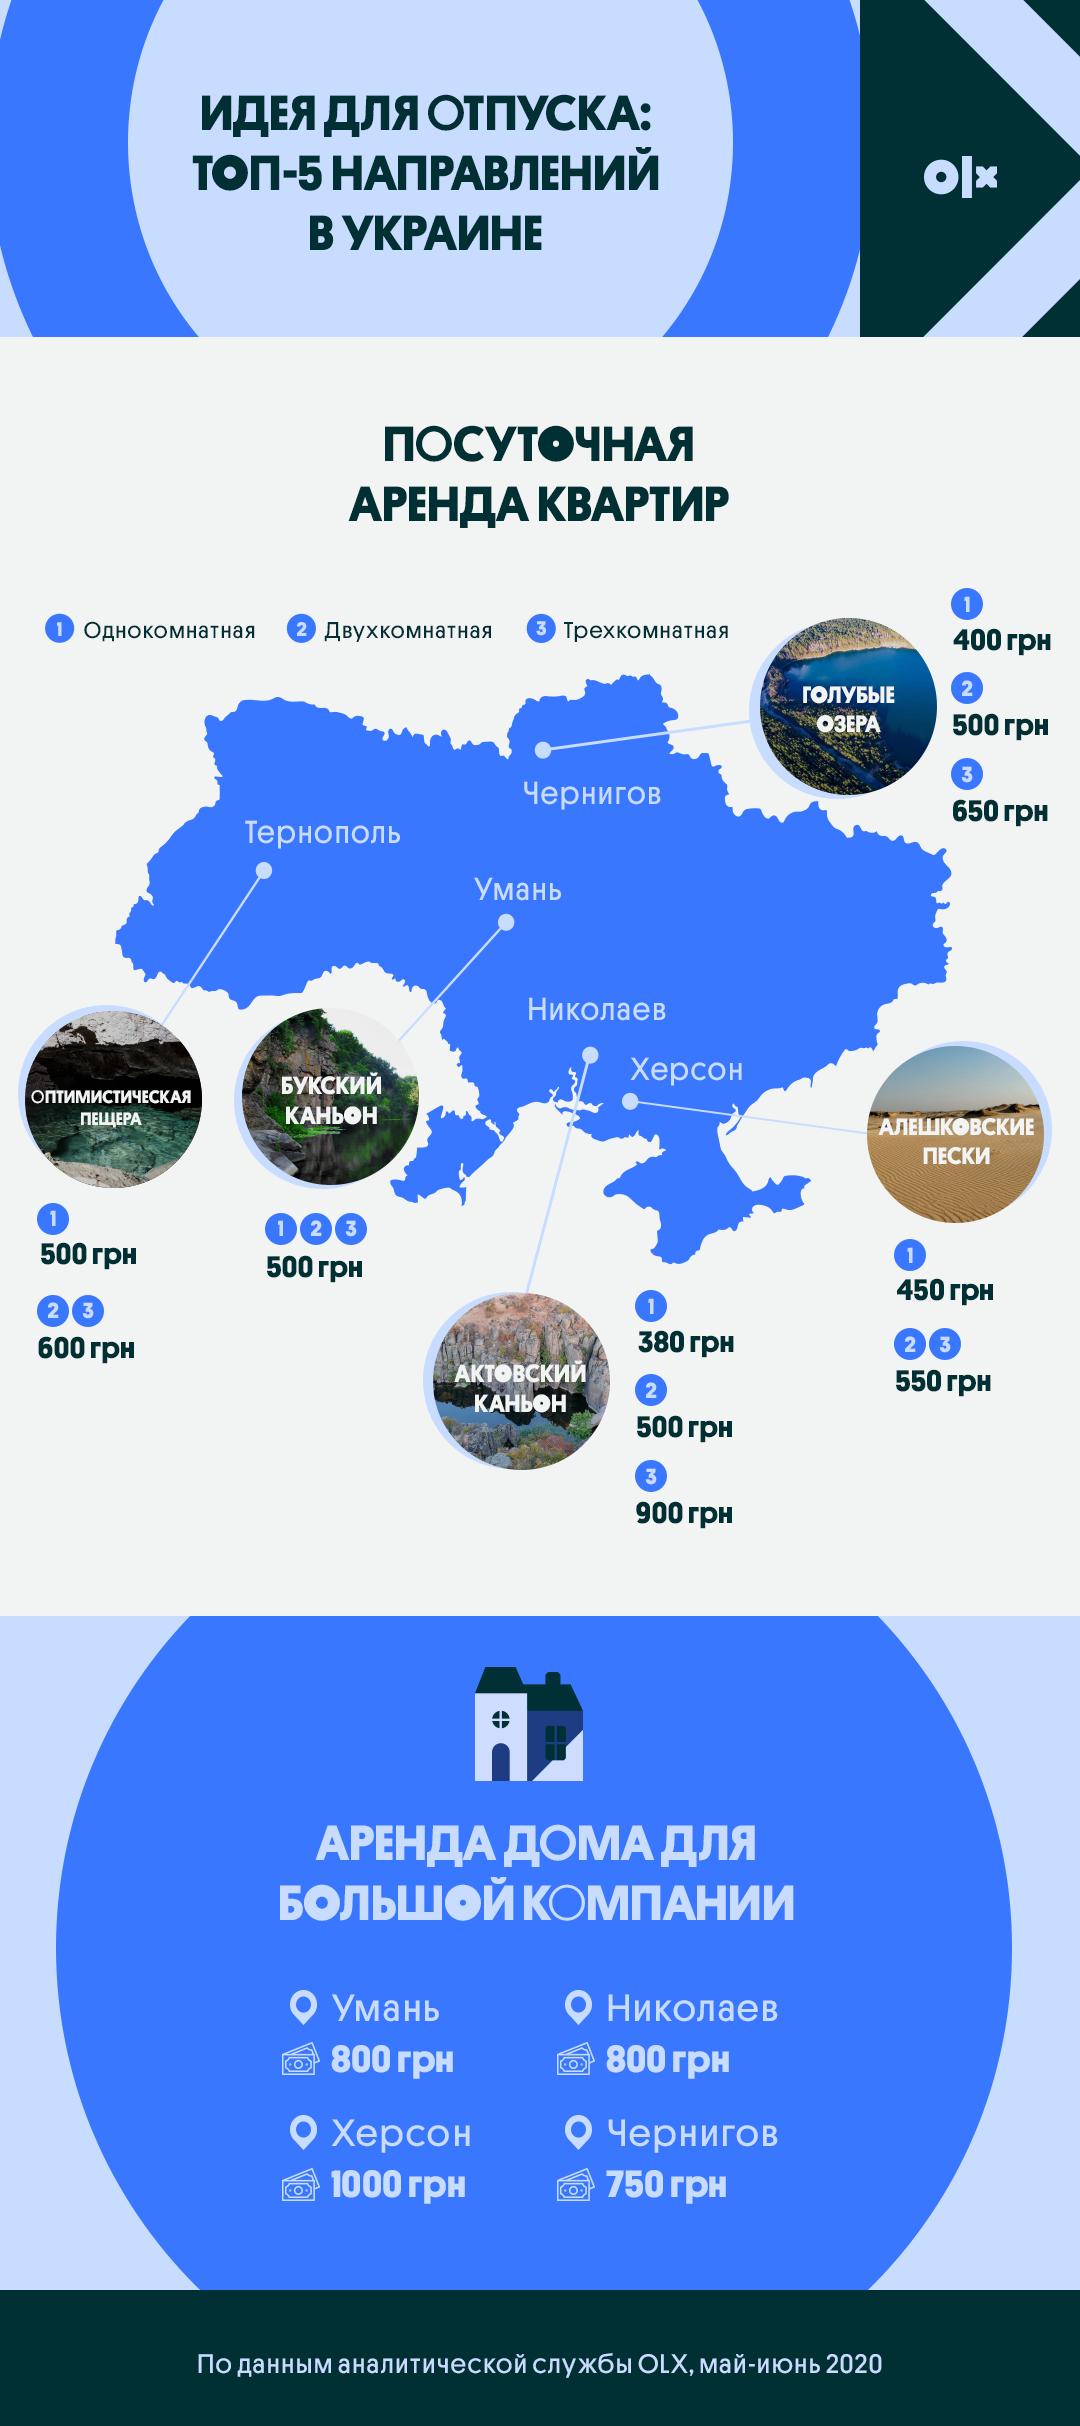 Идея для отпуска: топ-5 нестандартных направлений в Украине